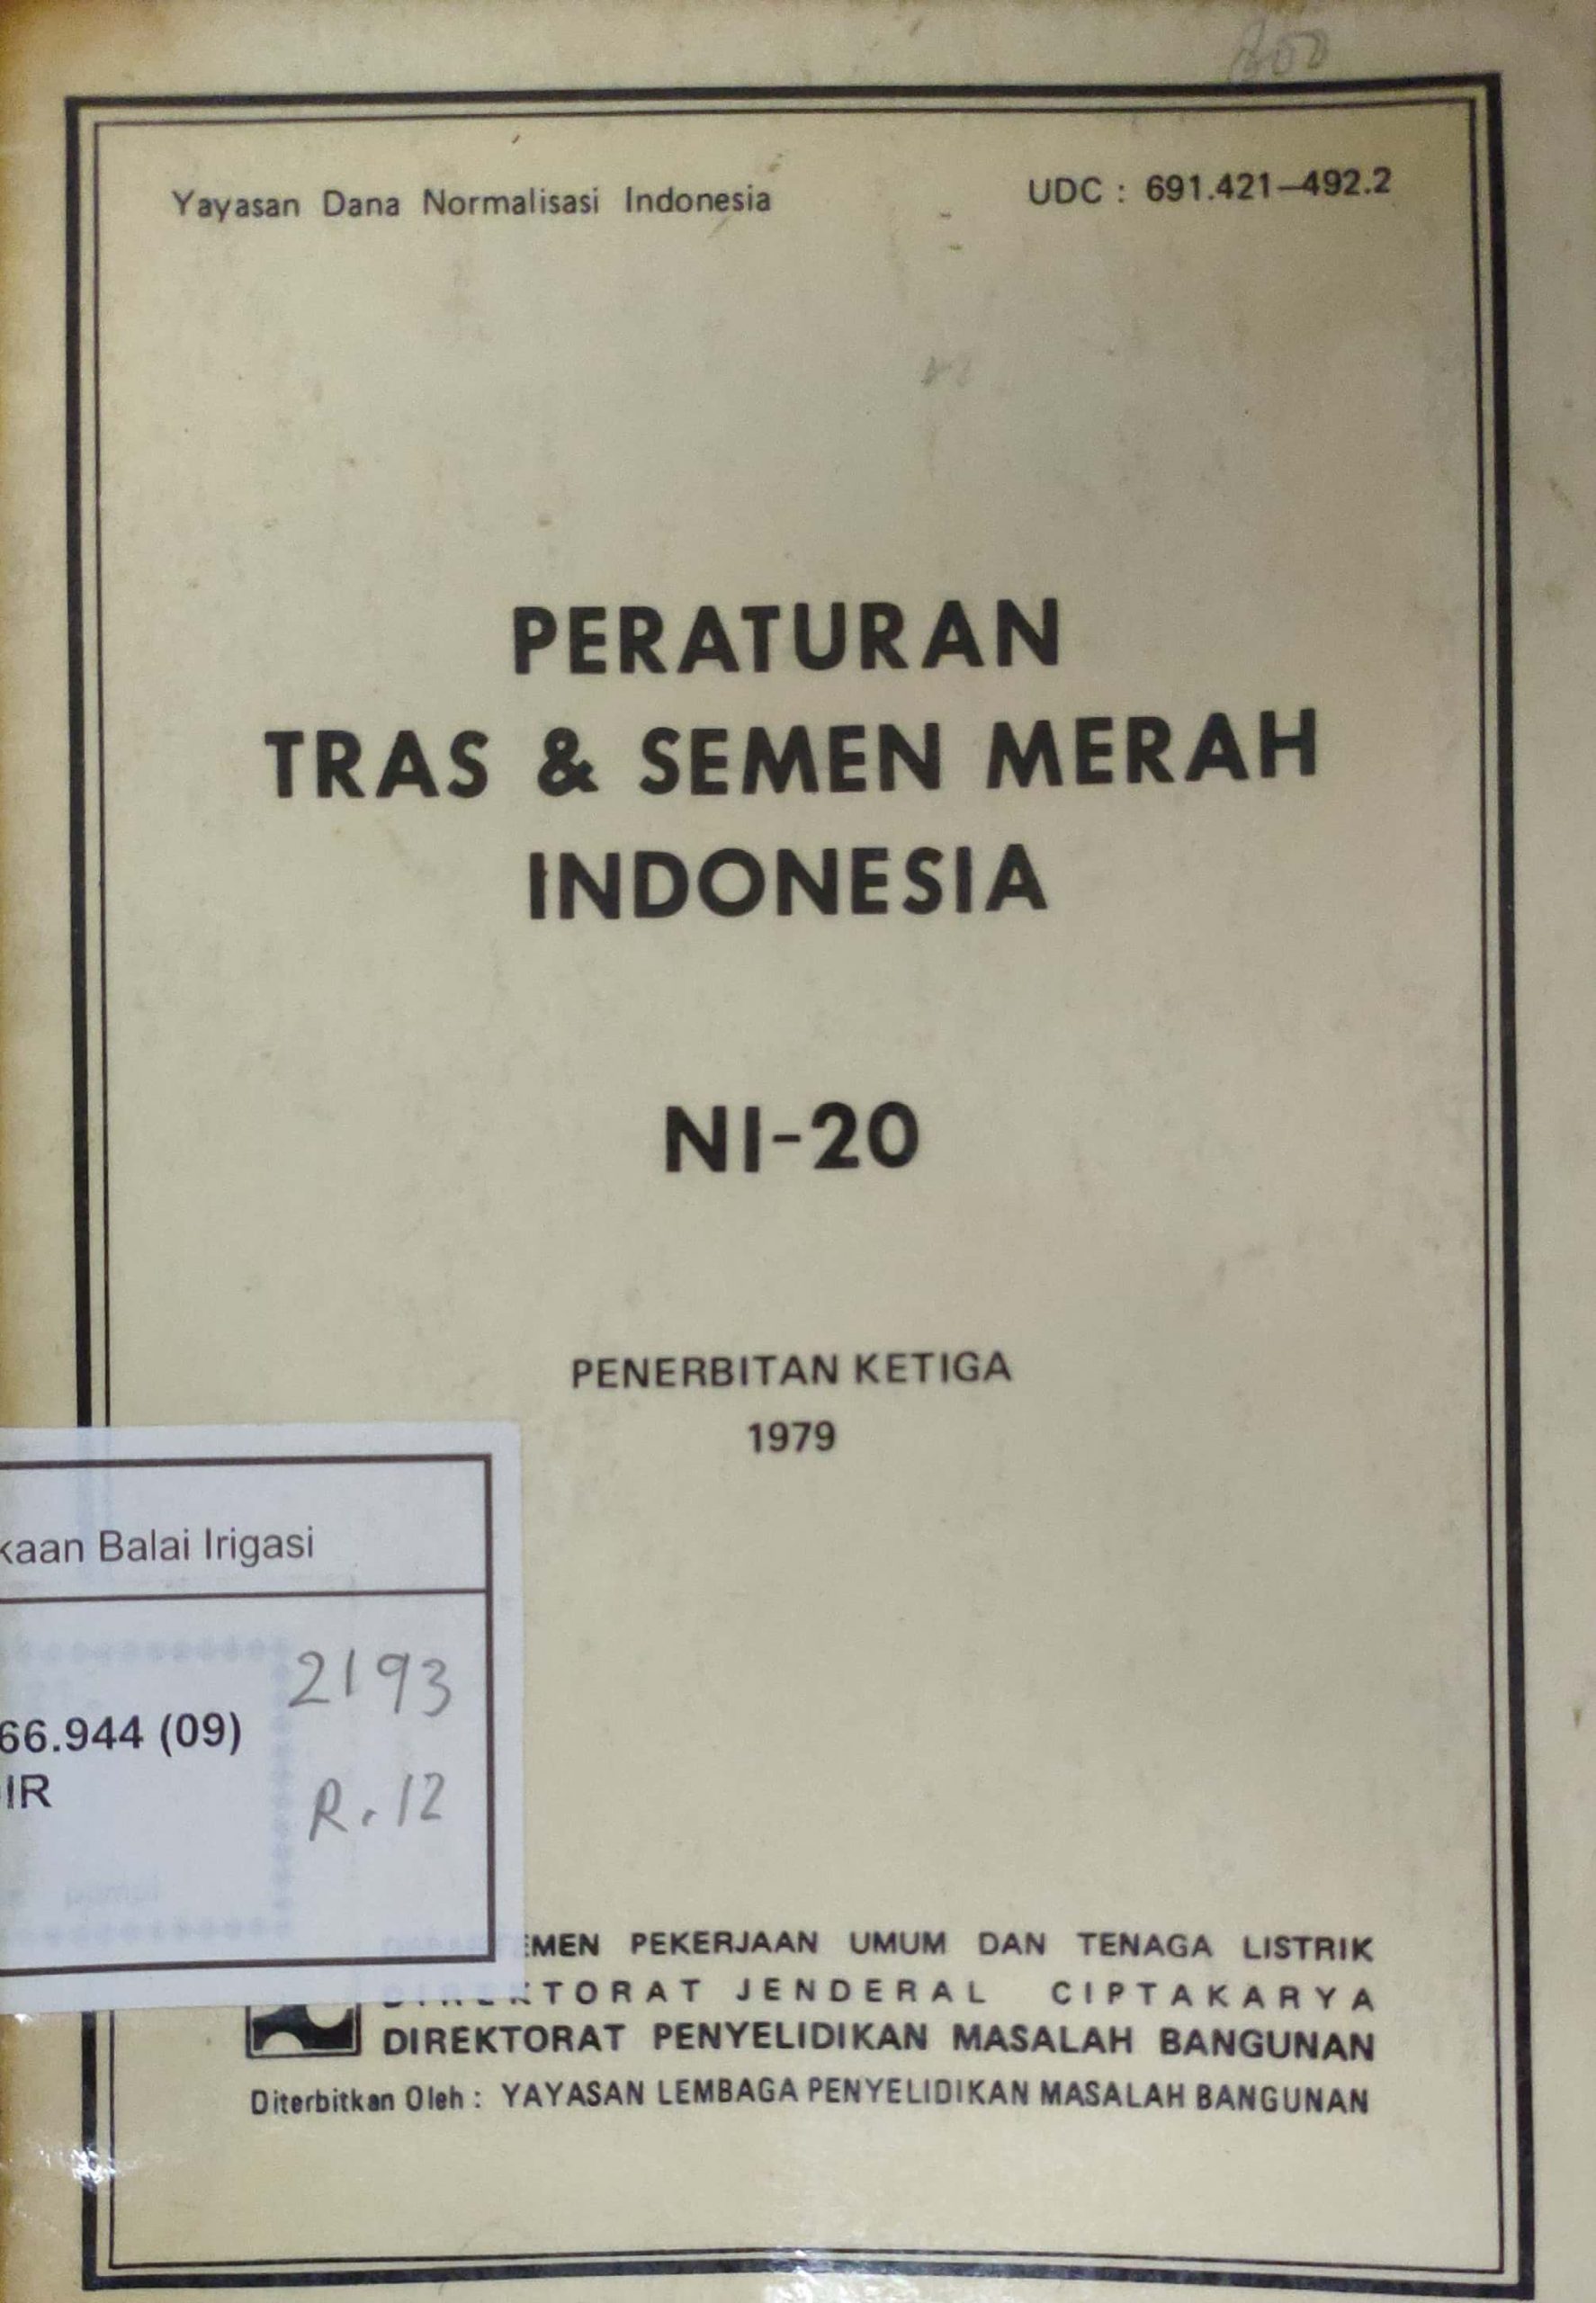 Peraturan Tras & Semen Merah Indonesia